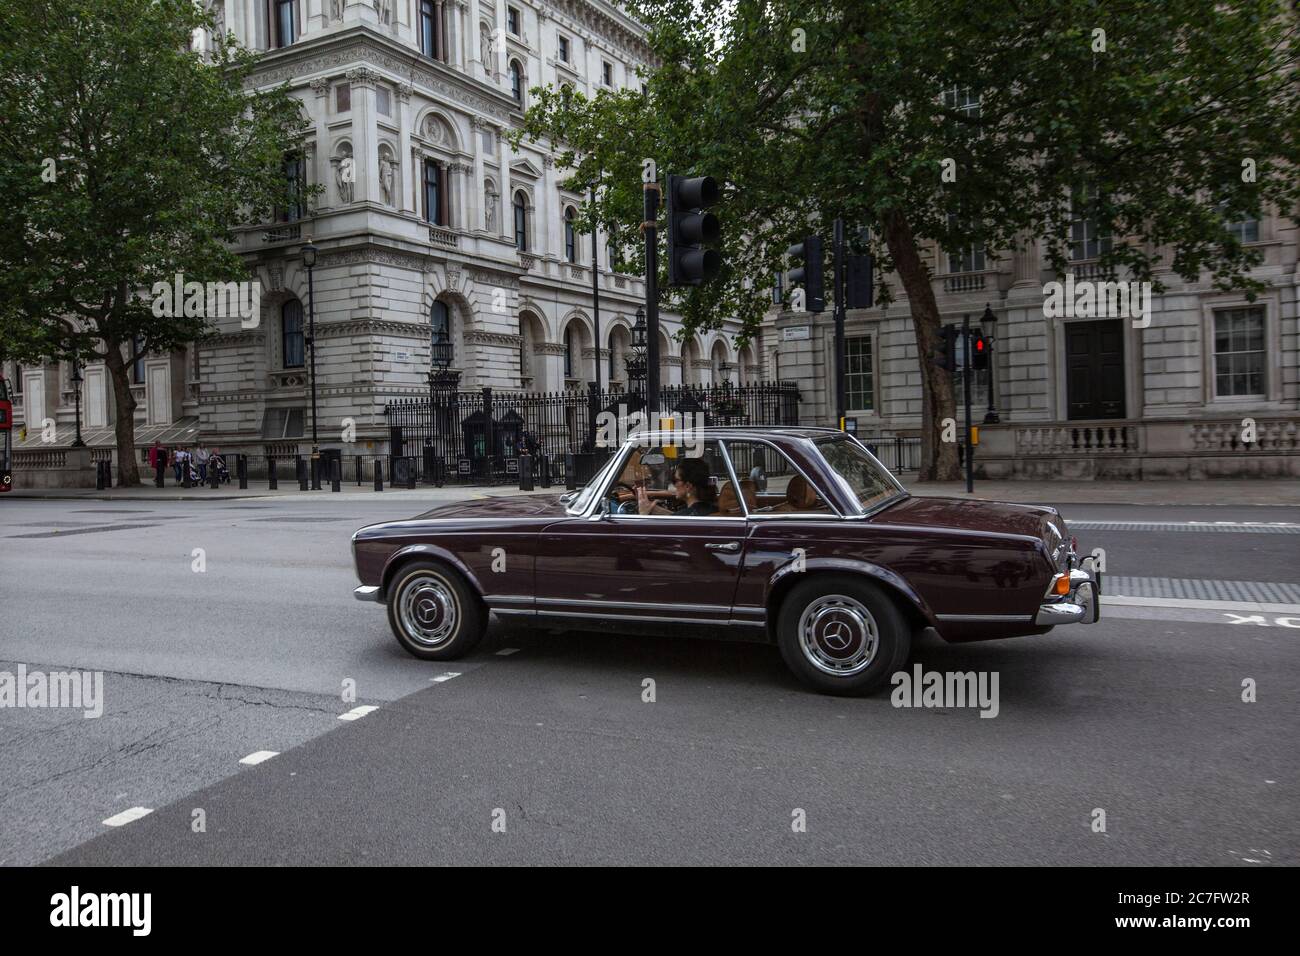 La Mercedes-Benz classique passe devant les portes de Downing Street, Whitehall, dans le calme des restrictions de verrouillage des coronavirus, dans le centre de Londres Banque D'Images